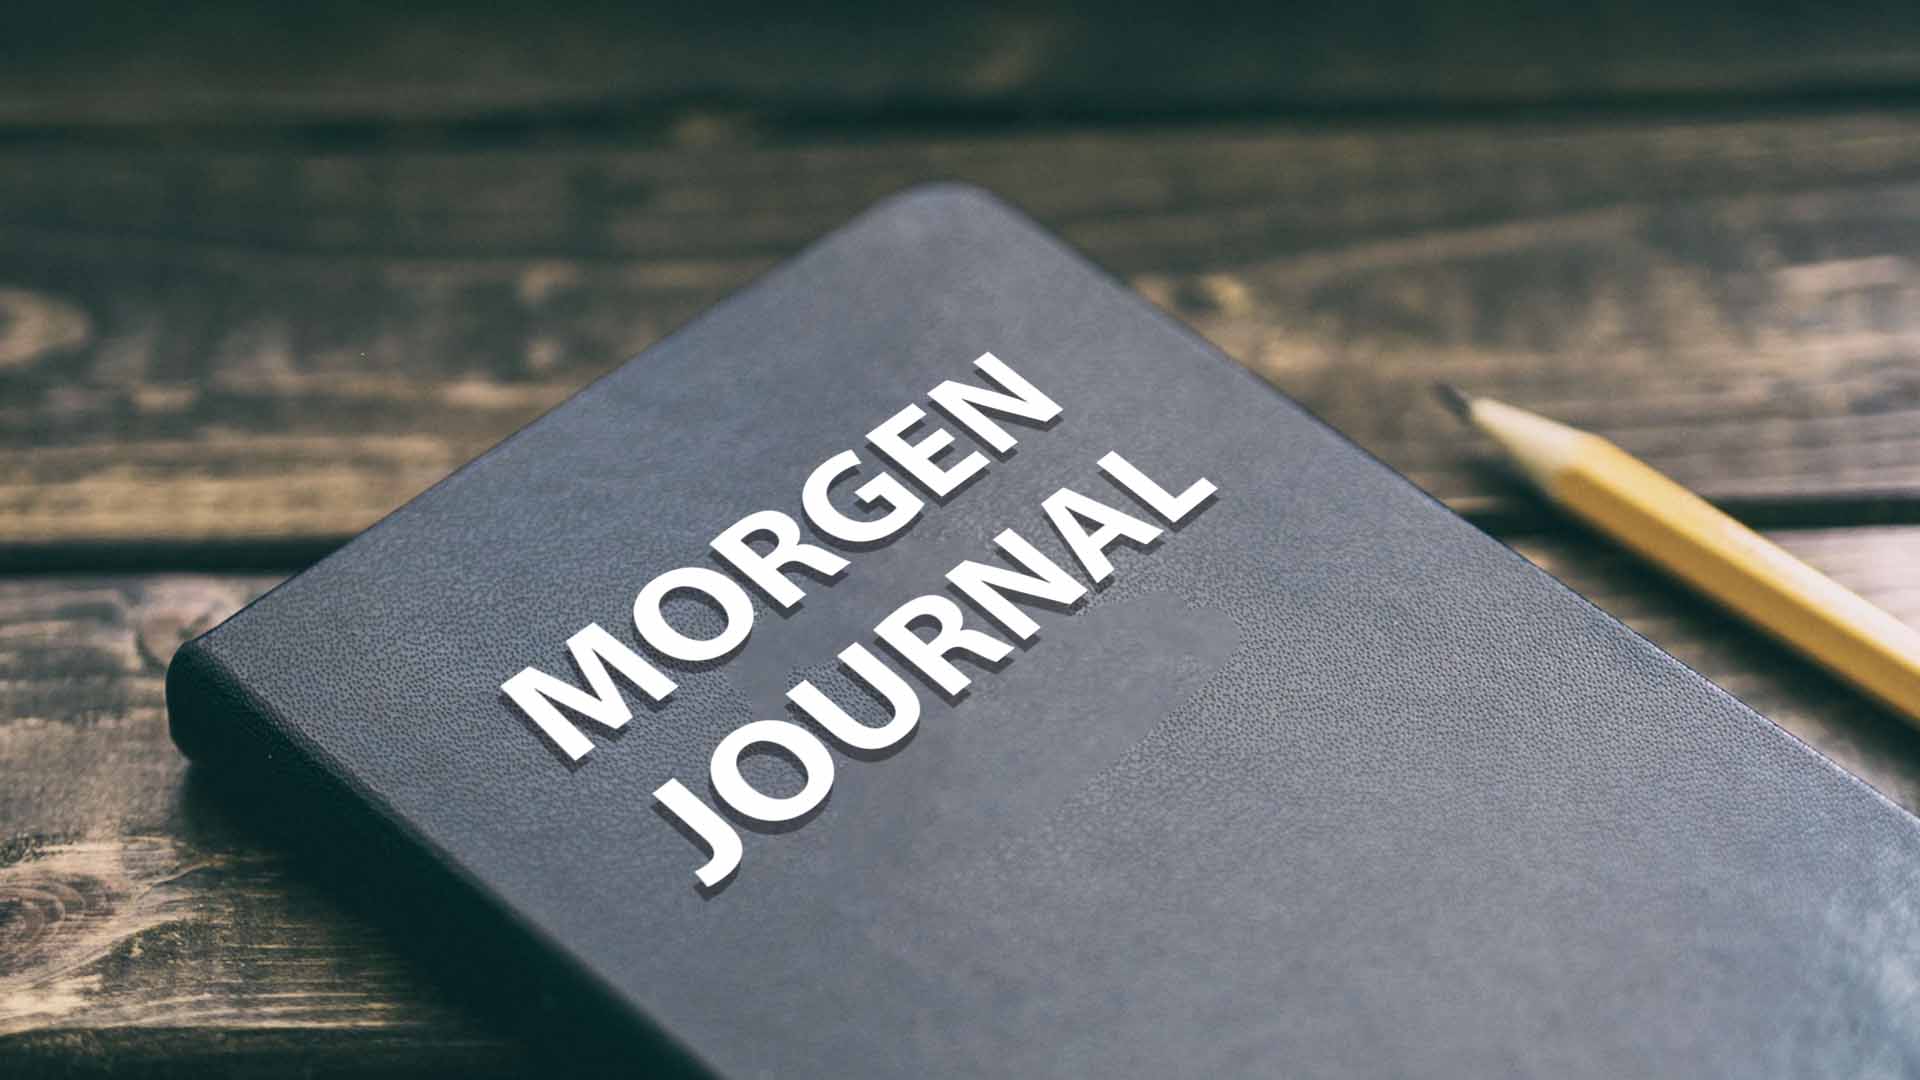 Kostenloses Morgen Journal PDF